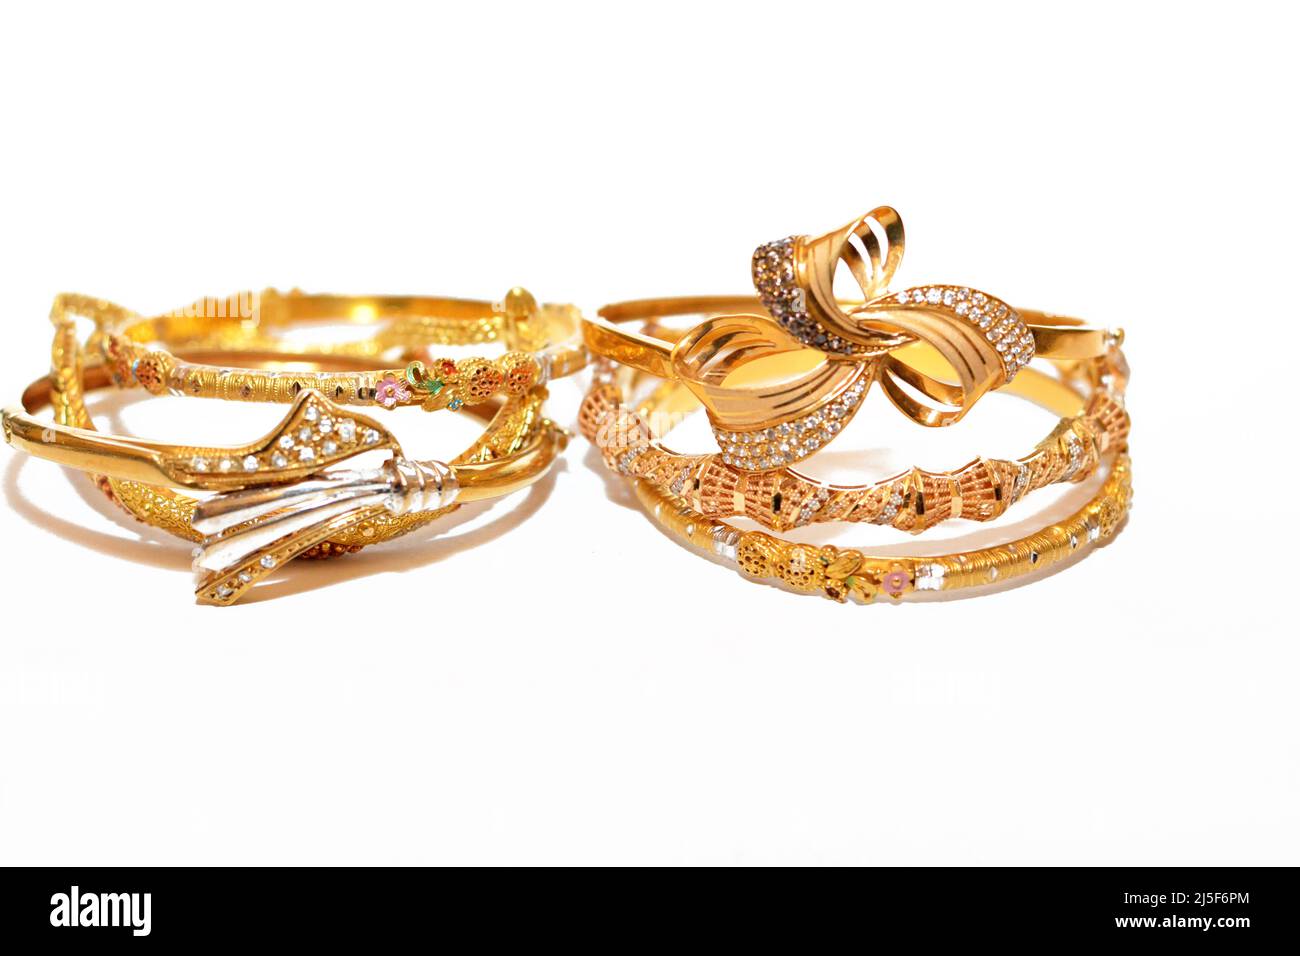 Pendentif bijoux sur un fond blanc isolé, ensemble de bracelets or mode 21 carat, bijoux or design, accessoires de bracelet de précieux met Banque D'Images